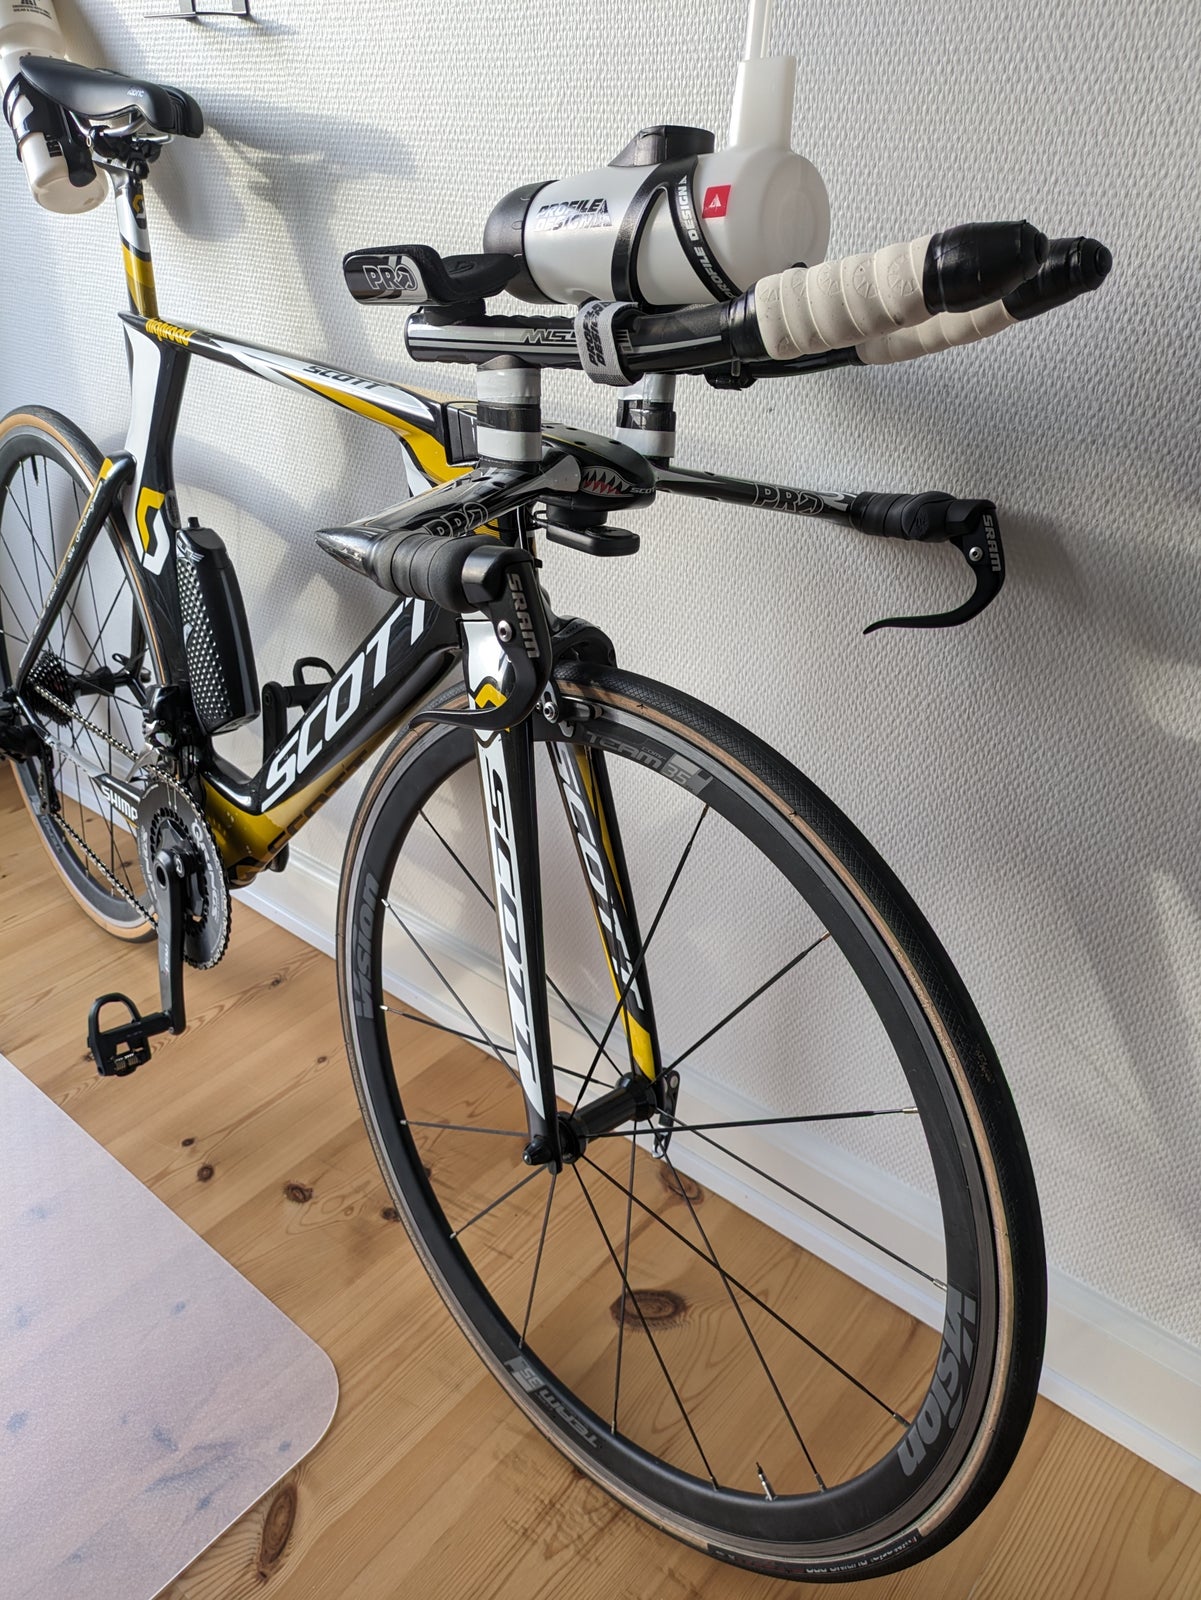 Triatloncykel, Scott HTC Highroad, 54 cm stel